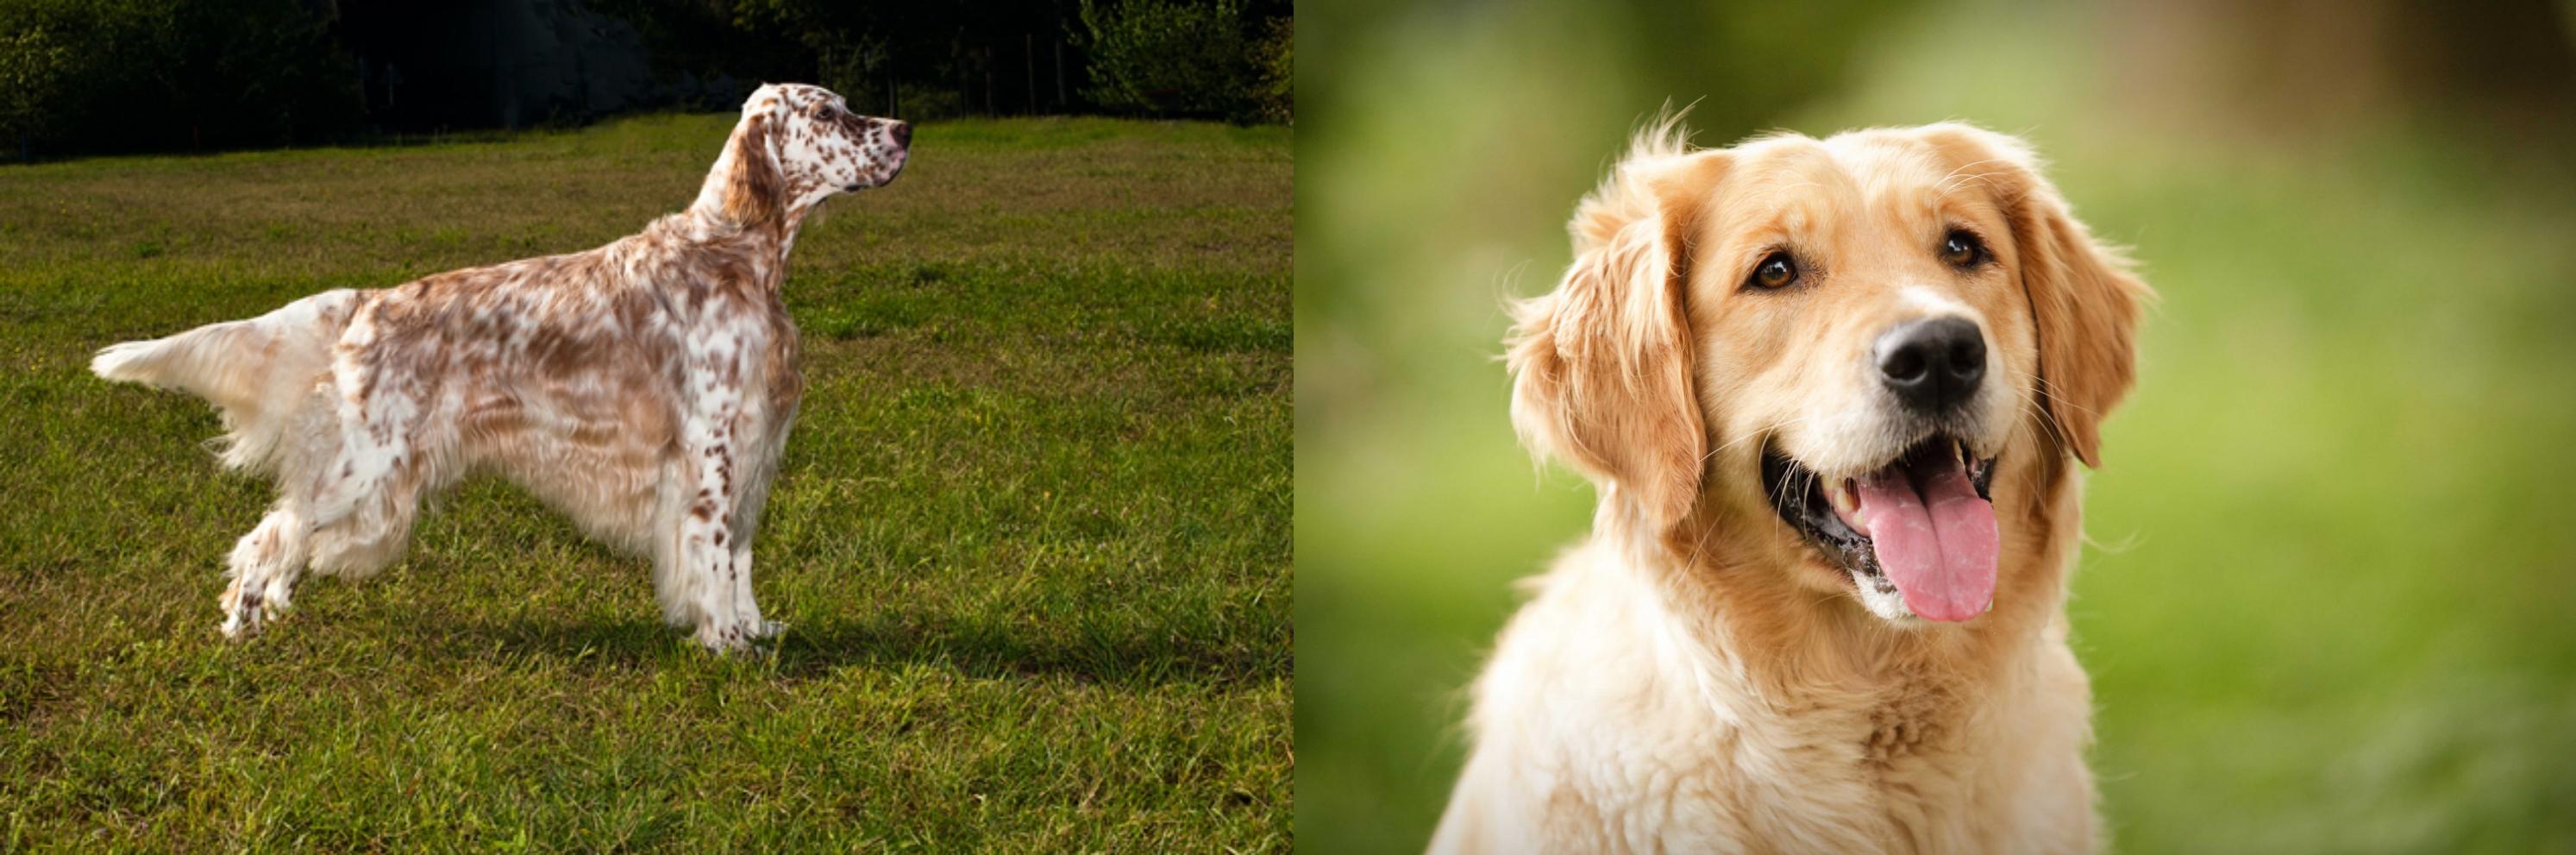 English Setter vs Golden Retriever Breed Comparison